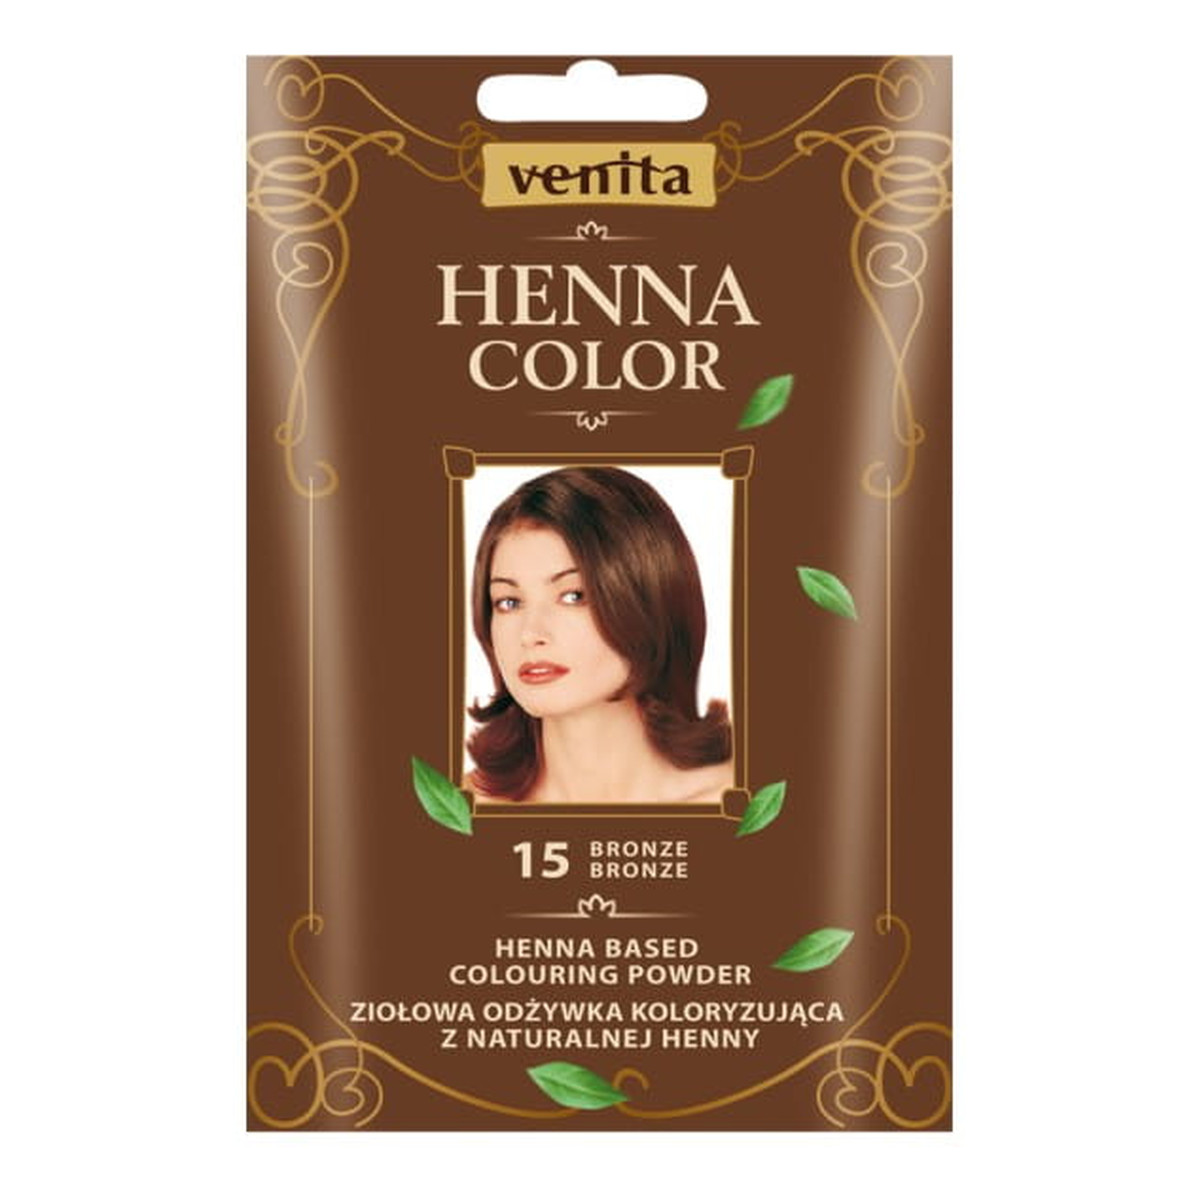 Venita Henna Color Ziołowa odżywka koloryzująca saszetka 30g